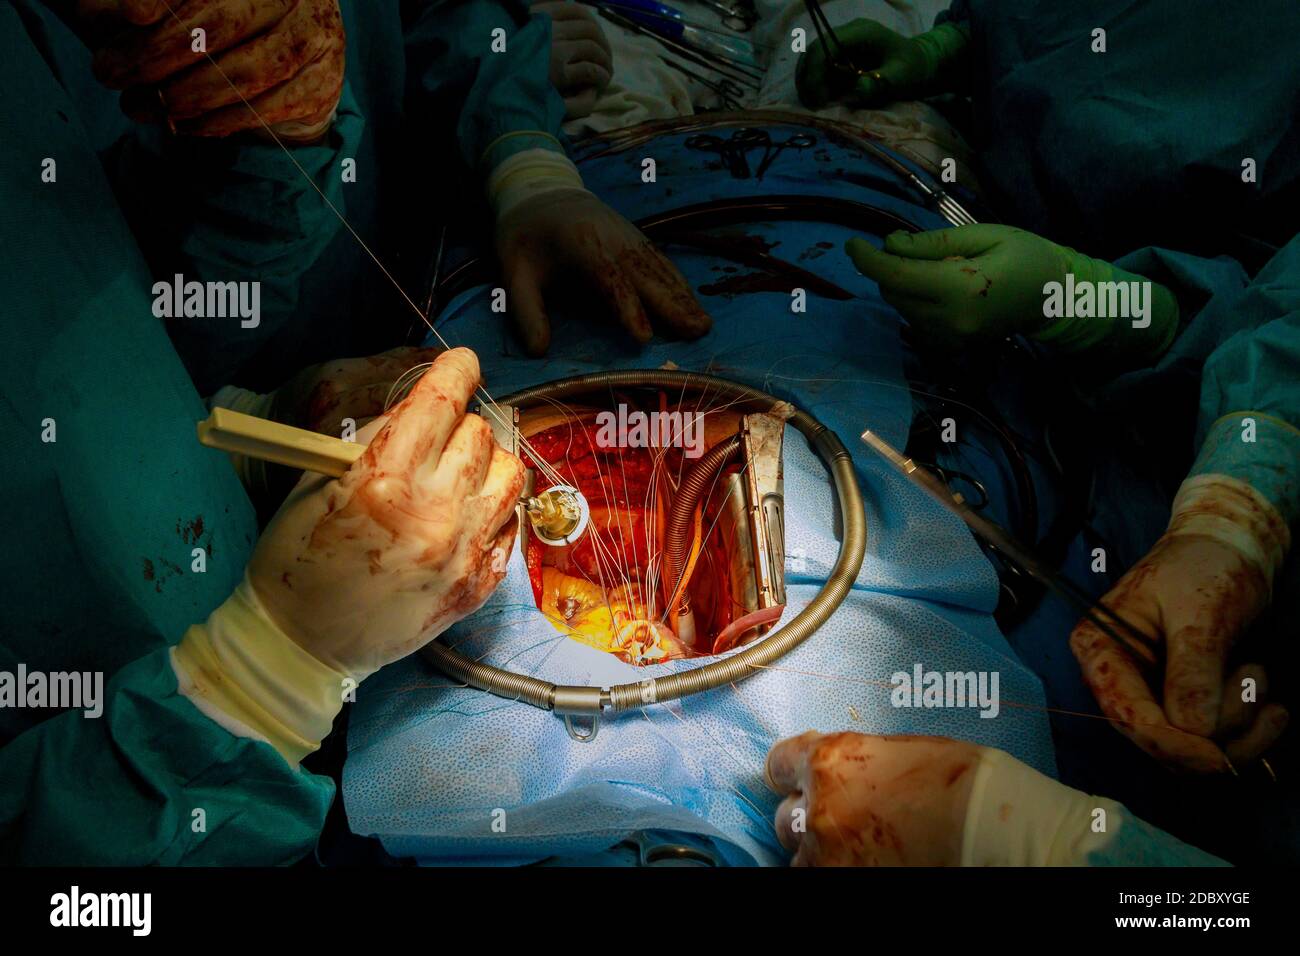 Intervento chirurgico di sostituzione della valvola aortica sul cuore umano finale chirurgico cuciture che fissano la protesi alla parete dell'aorta Foto Stock